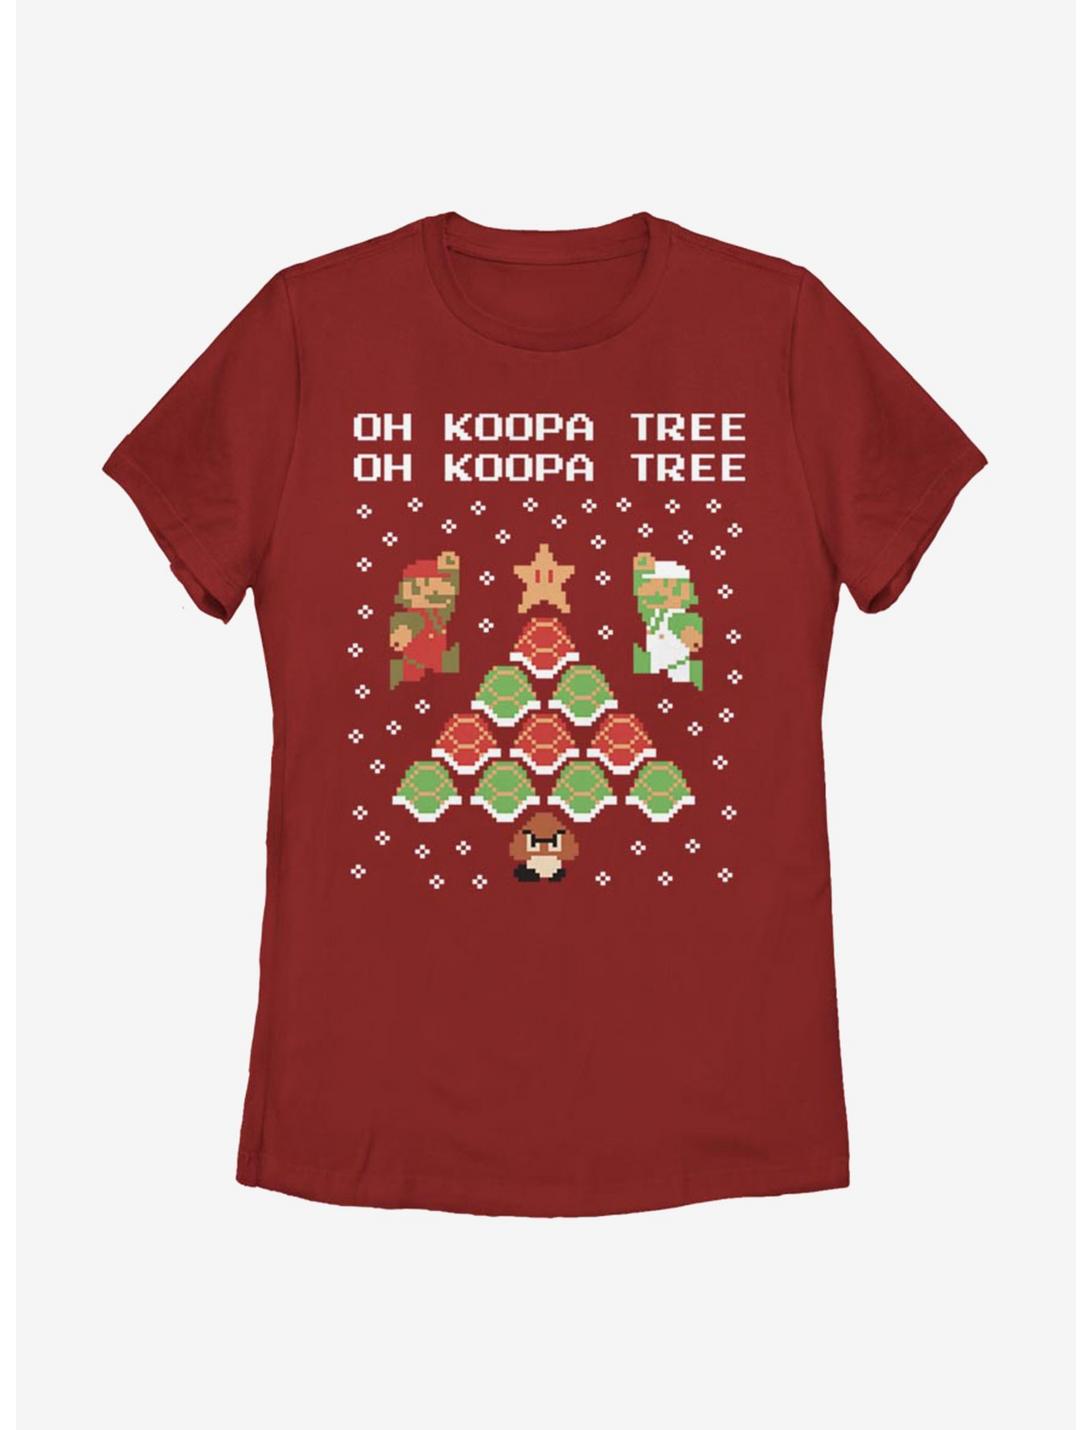 Nintendo Super Mario Koopa Tree Womens T-Shirt, RED, hi-res